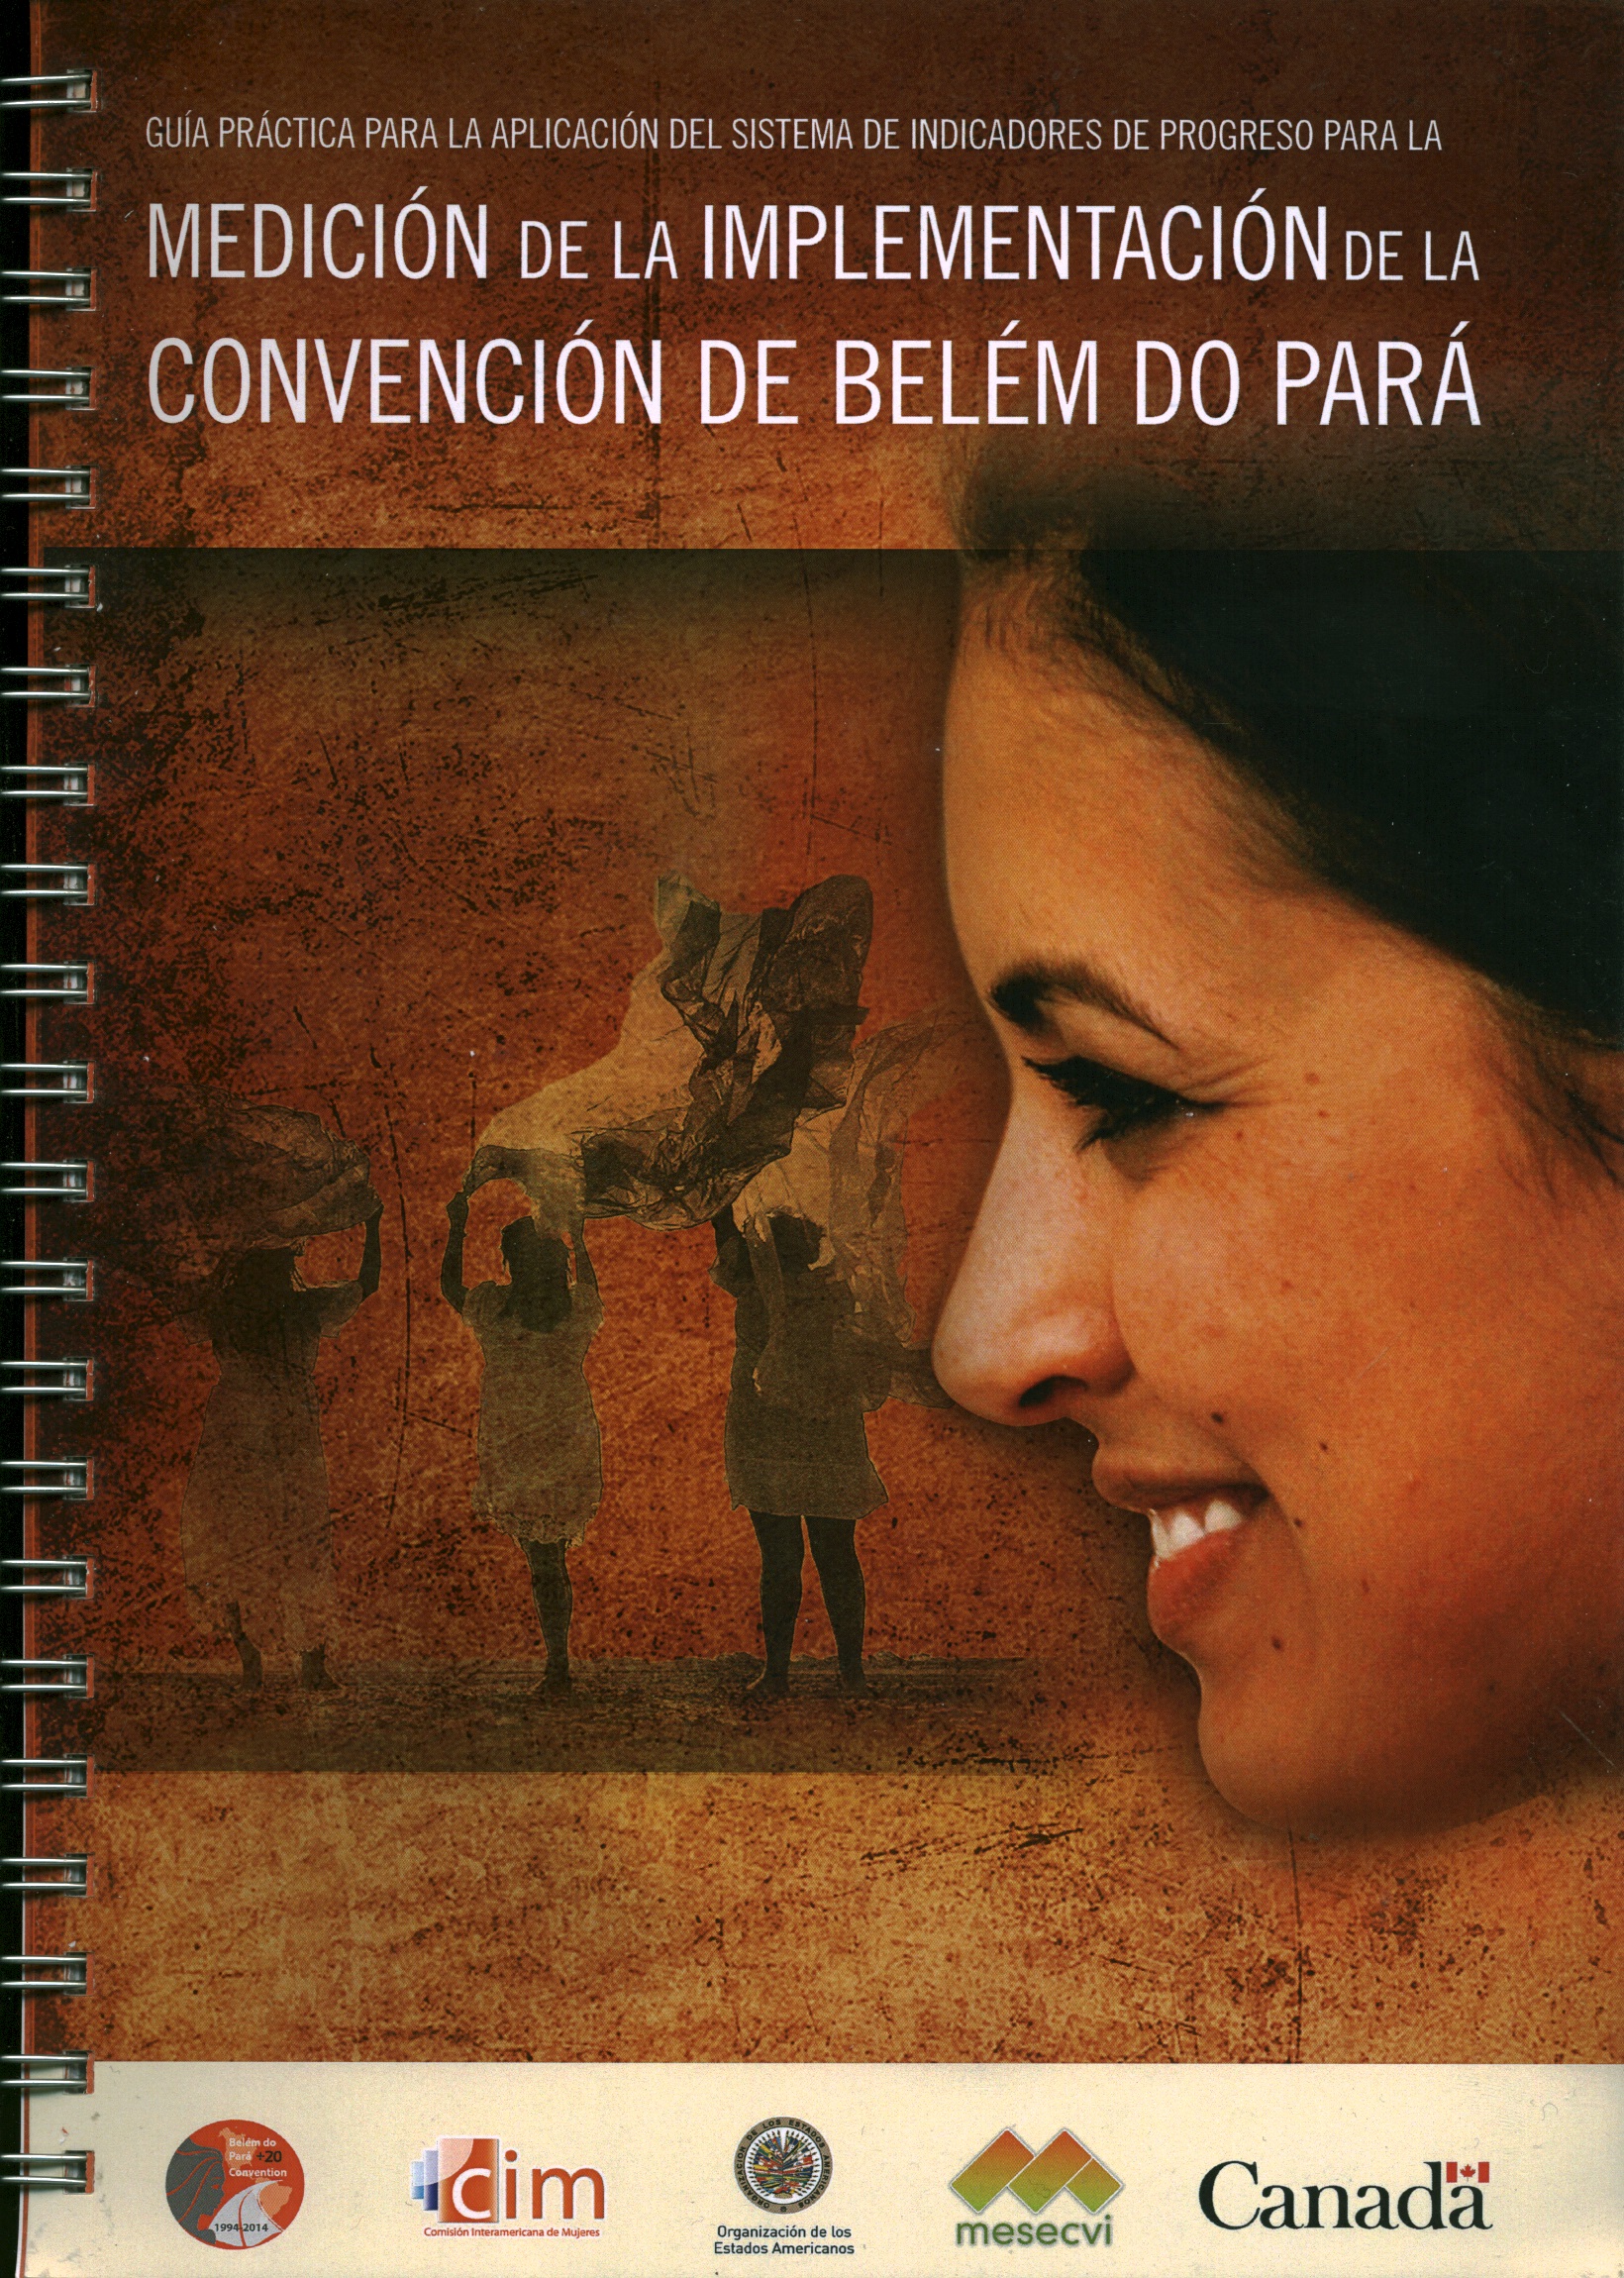 Guía práctica para la aplicación del sistema de indicadores de progreso para la medición de la implementación de la Convención de Belem do Pará